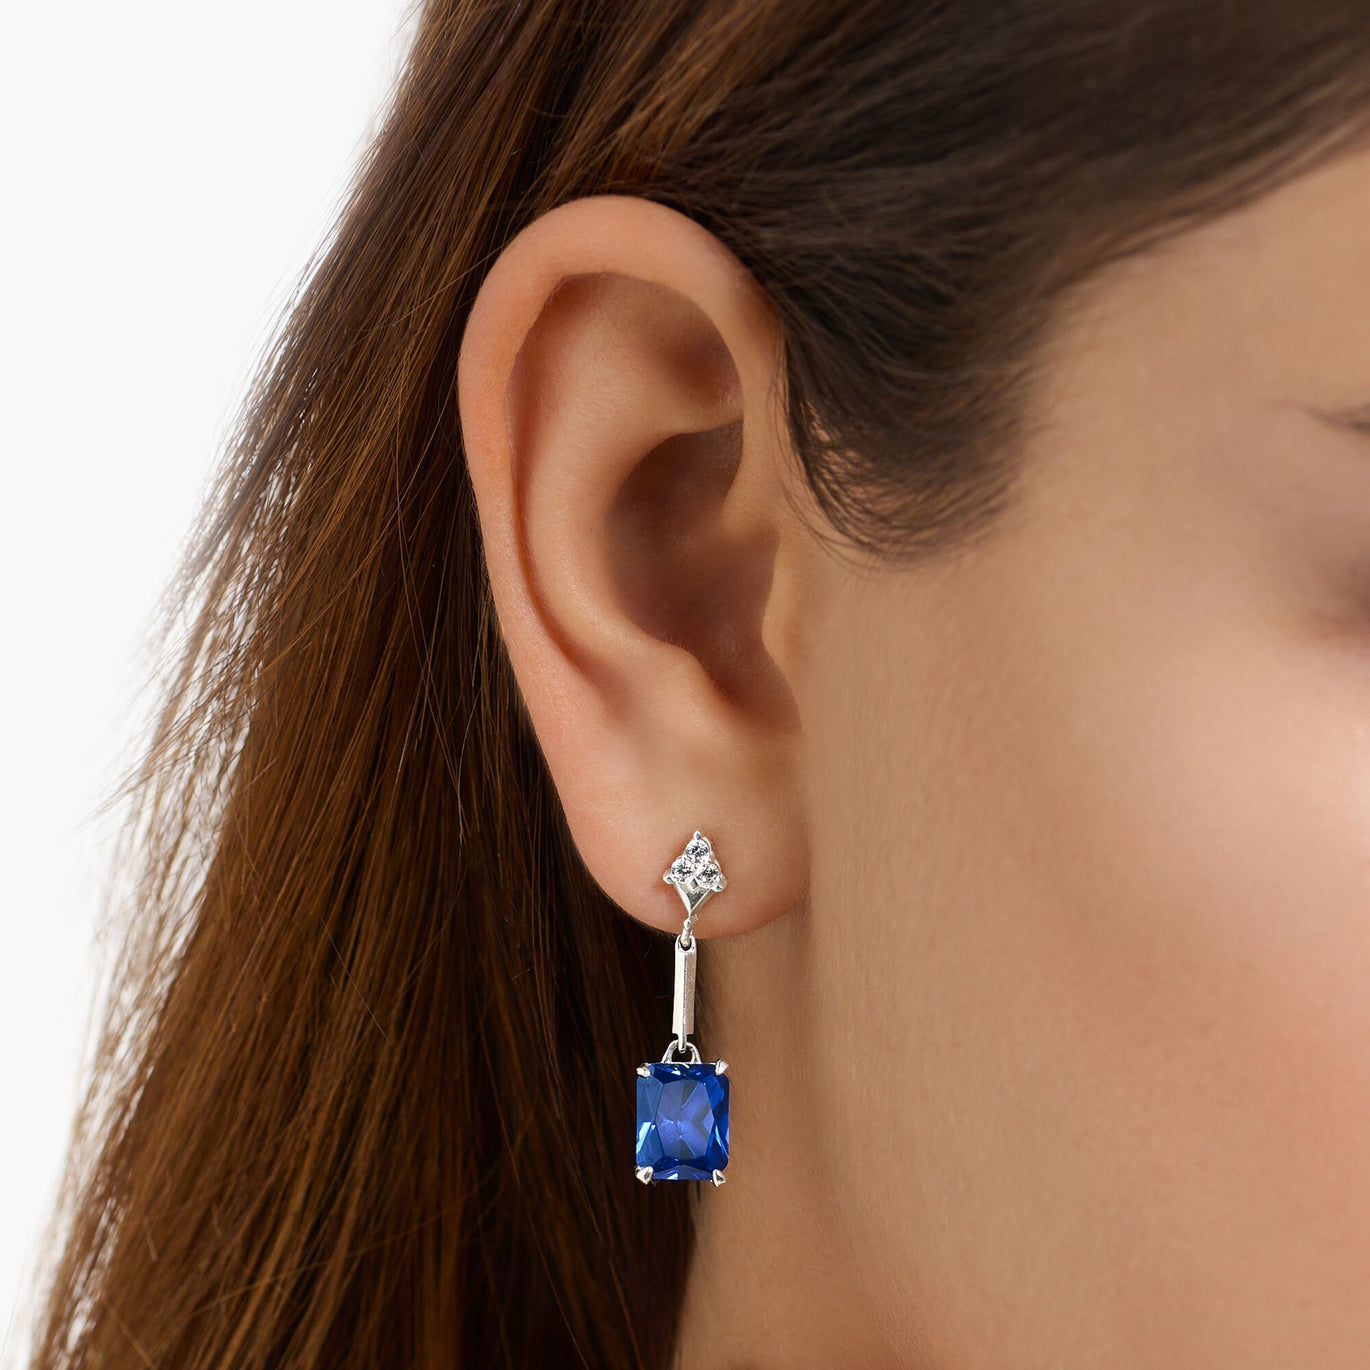 Thomas Sabo Blue Stone drop earrings